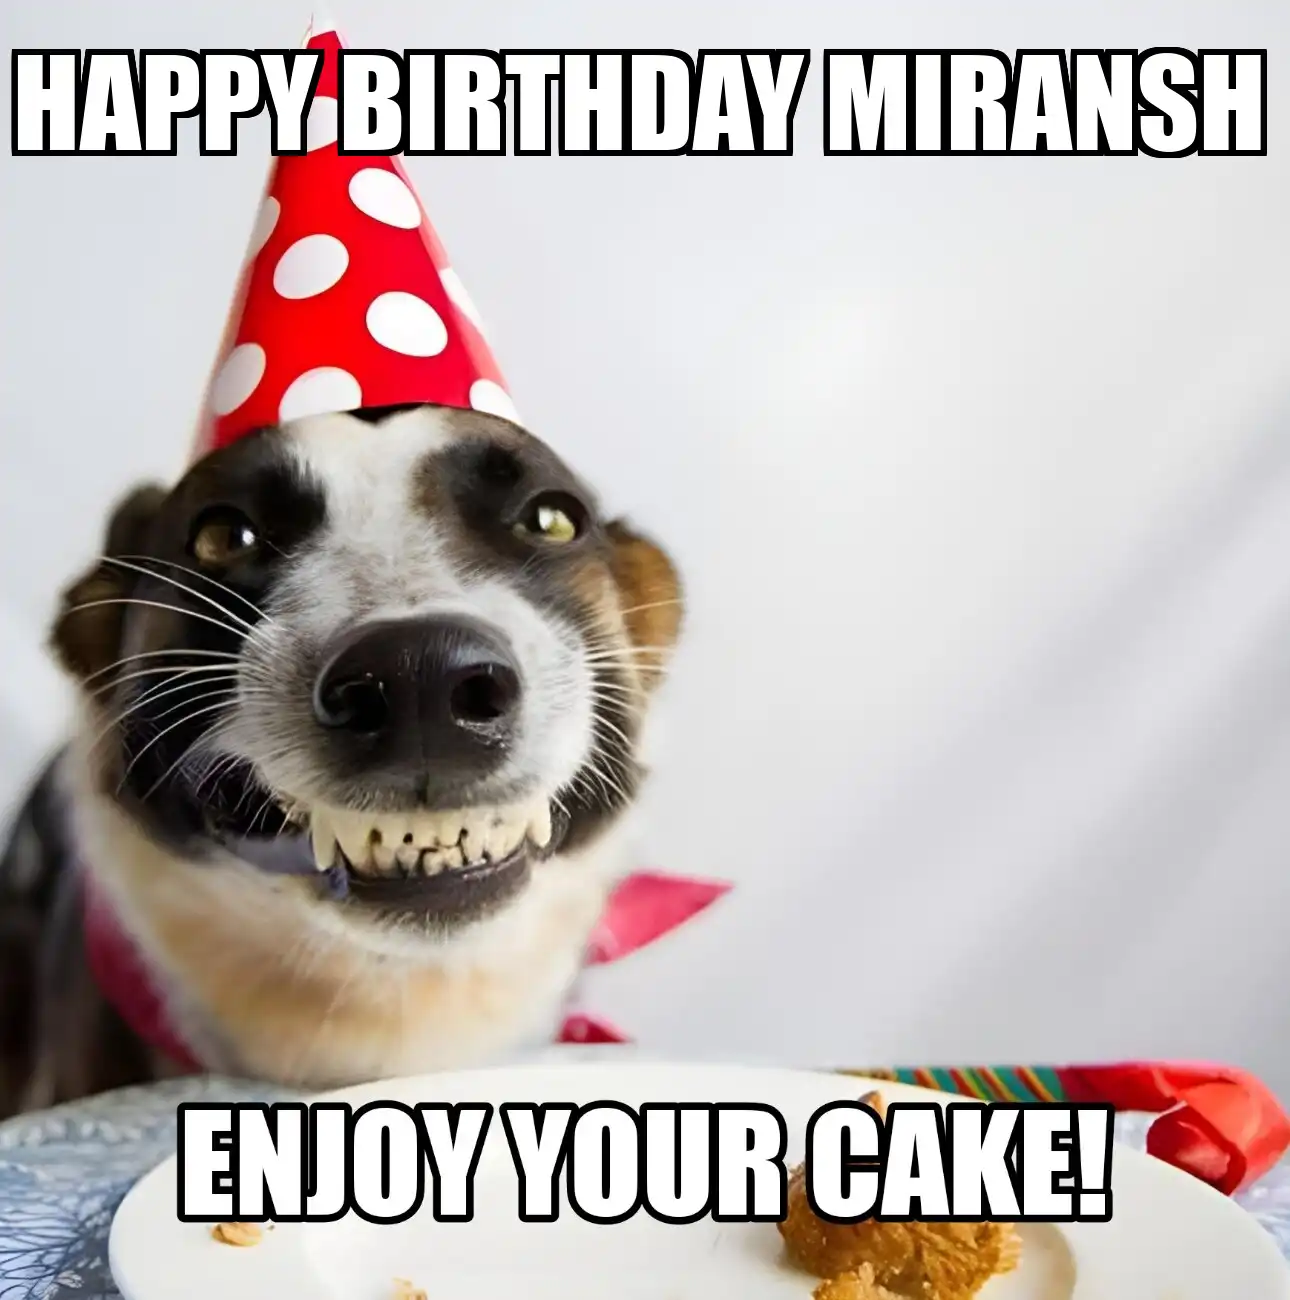 Happy Birthday Miransh Enjoy Your Cake Dog Meme